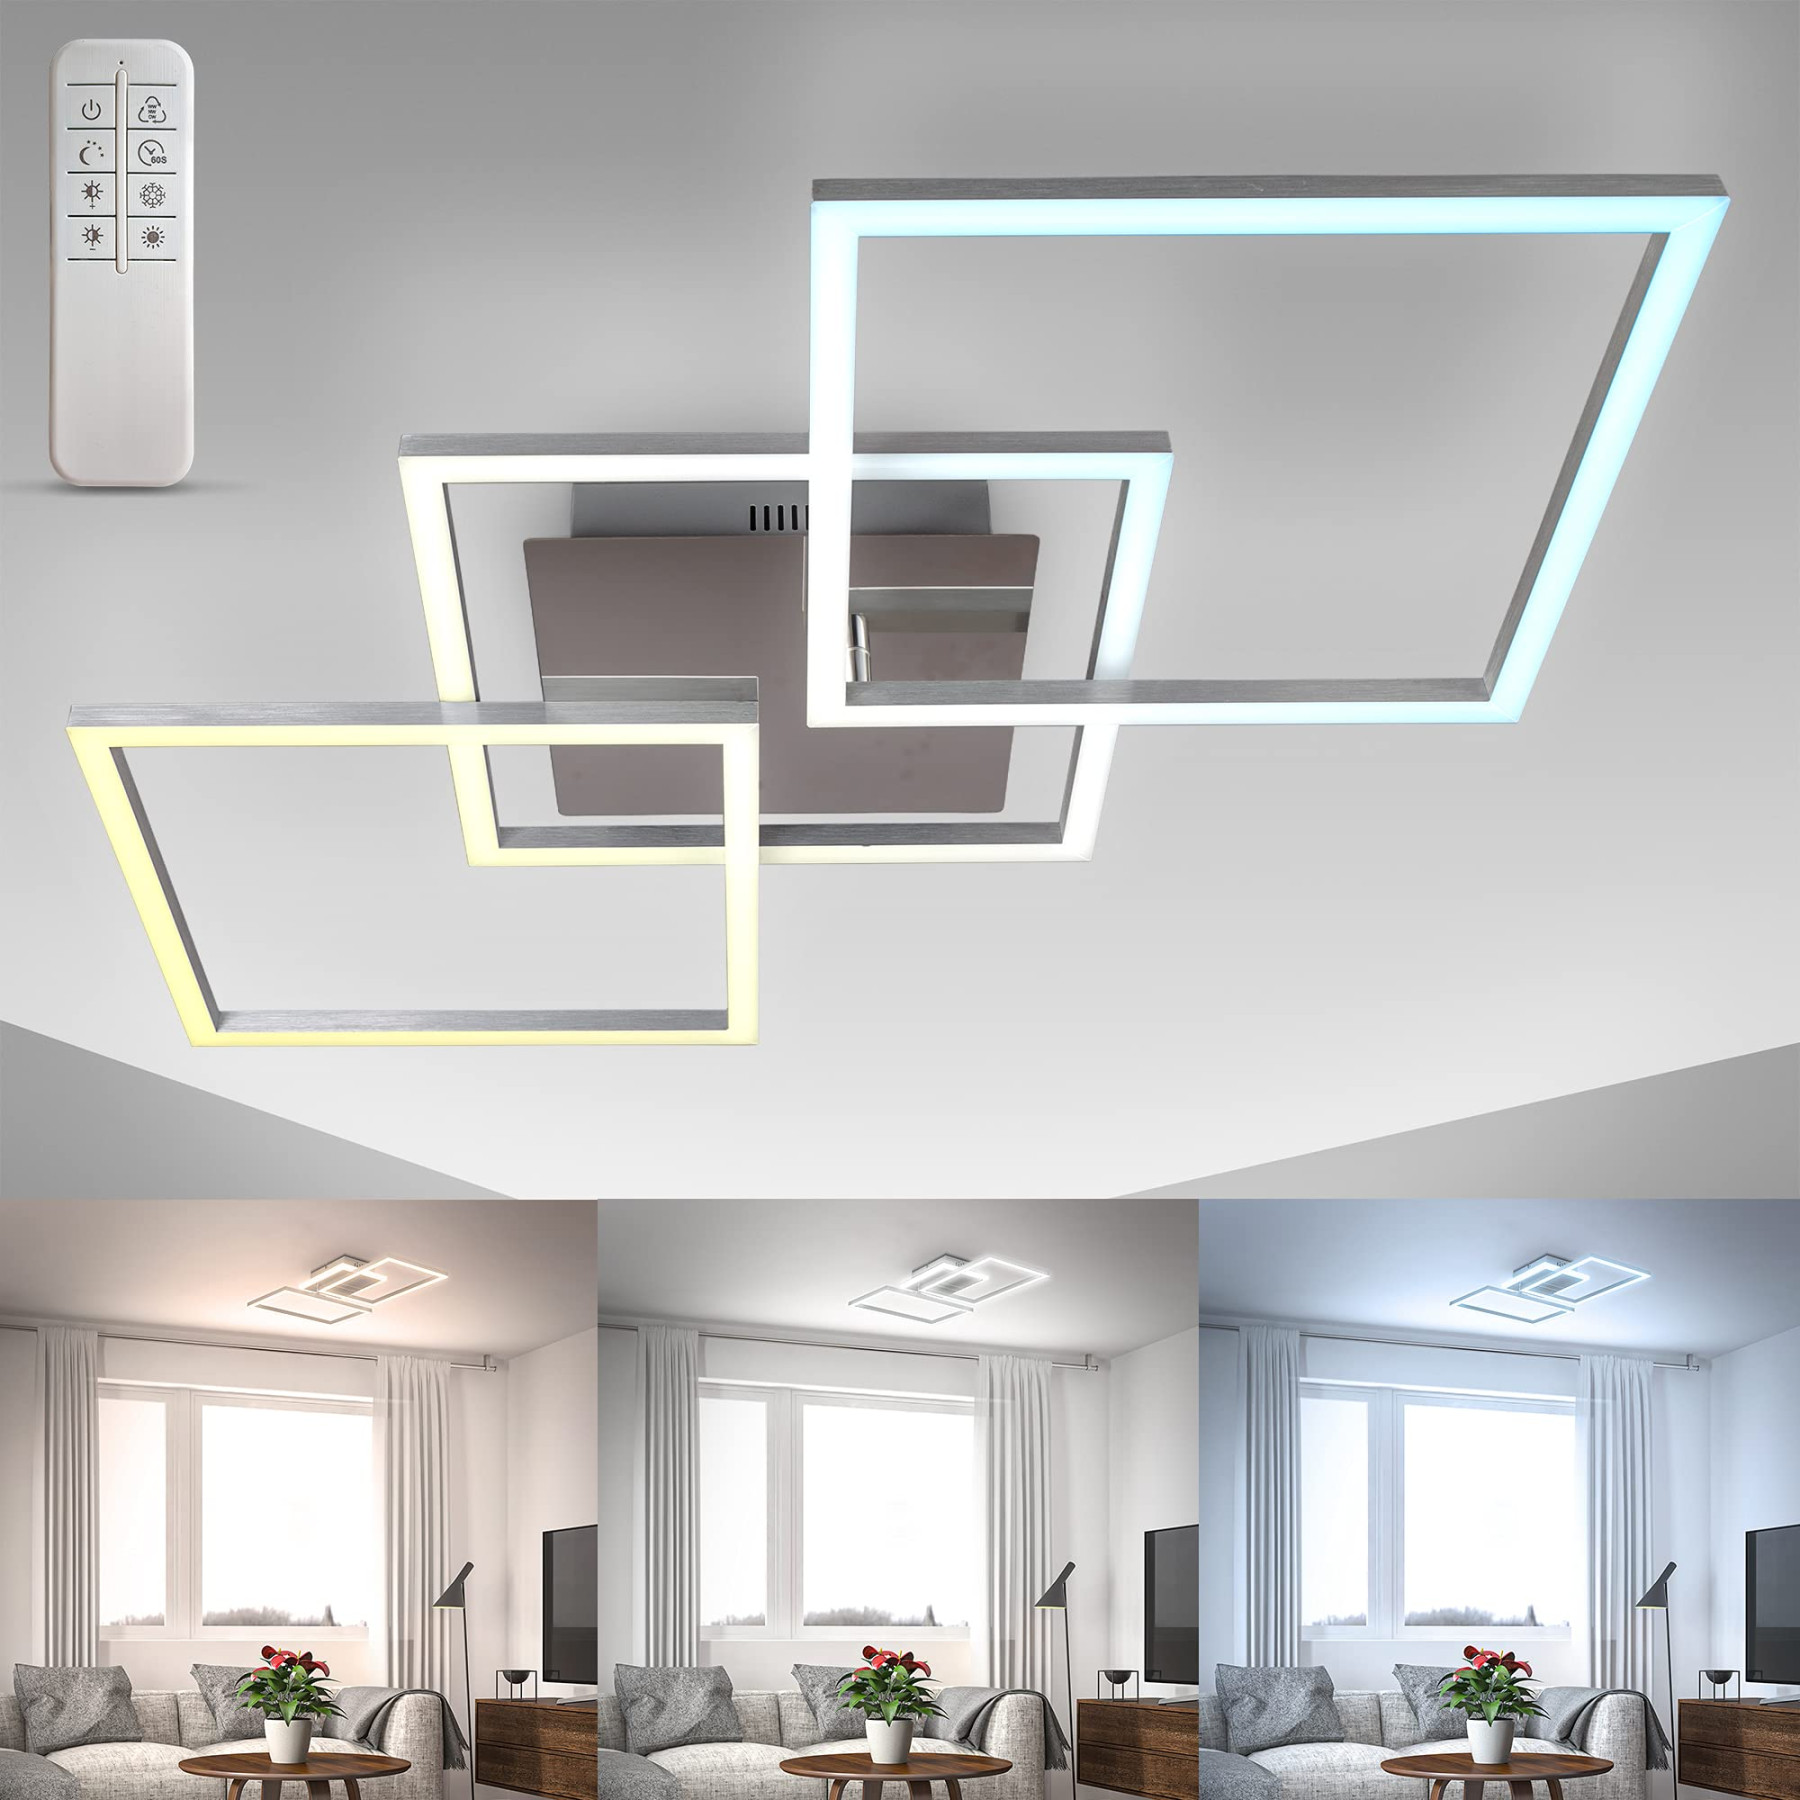 BKLicht - Deckenleuchte LED, Deckenlampe LED - Lampe Wohnzimmer, Dimmbar,  Schwenkbar, Fernbedienung, Multifunktional,  Watt